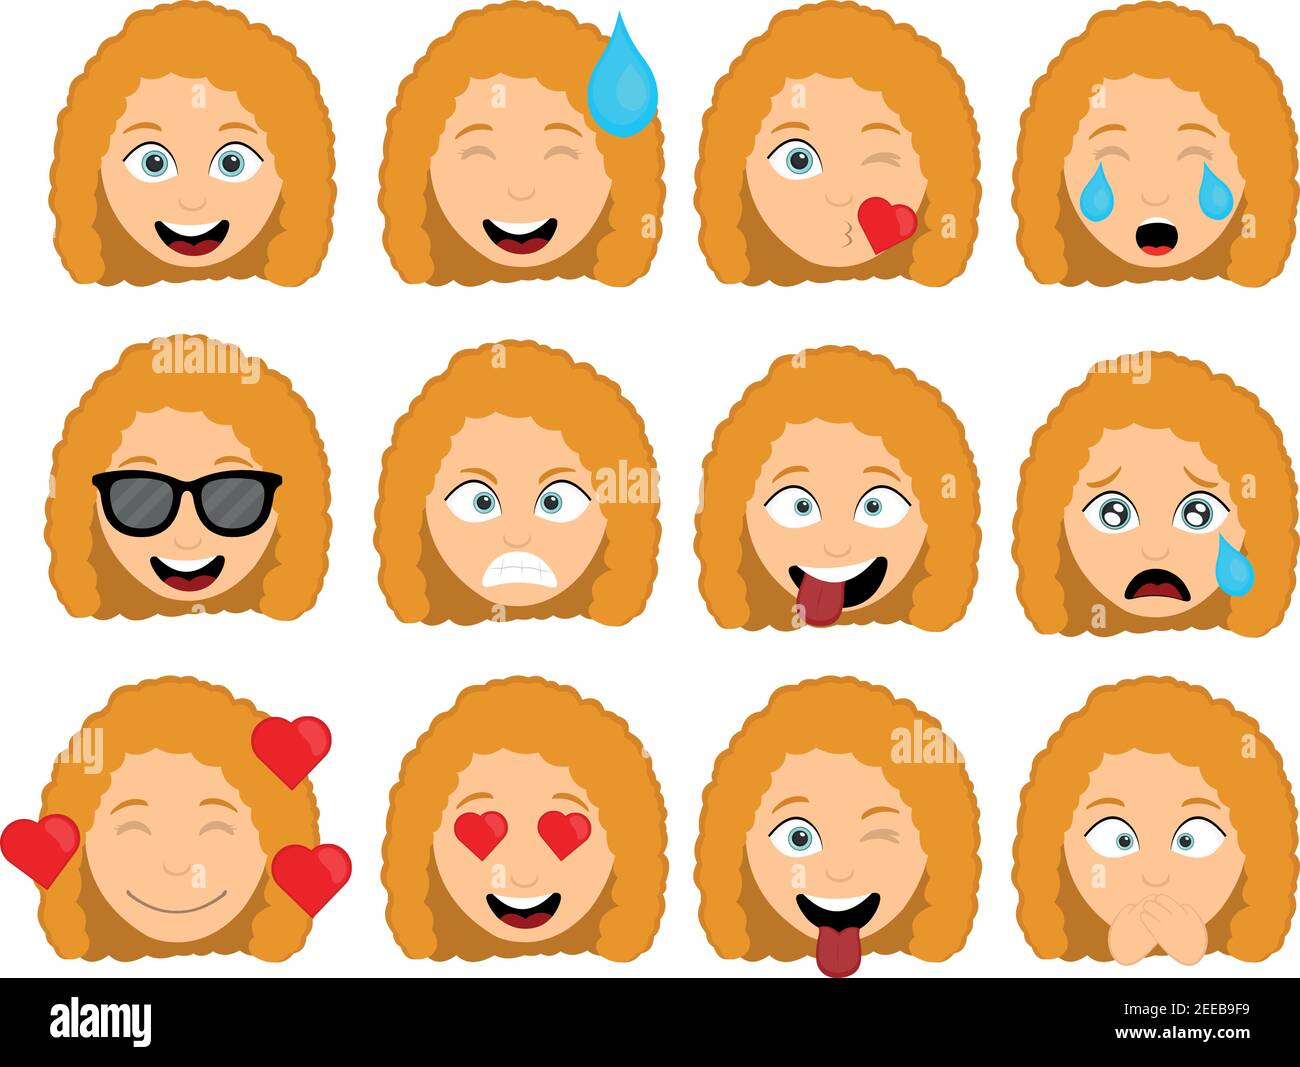 Vektor-Illustration der Emoticons des Kopfes einer Cartoon-Frau mit verschiedenen Ausdrücken und Emotionen, der Freude, Liebe und wütend Stock Vektor